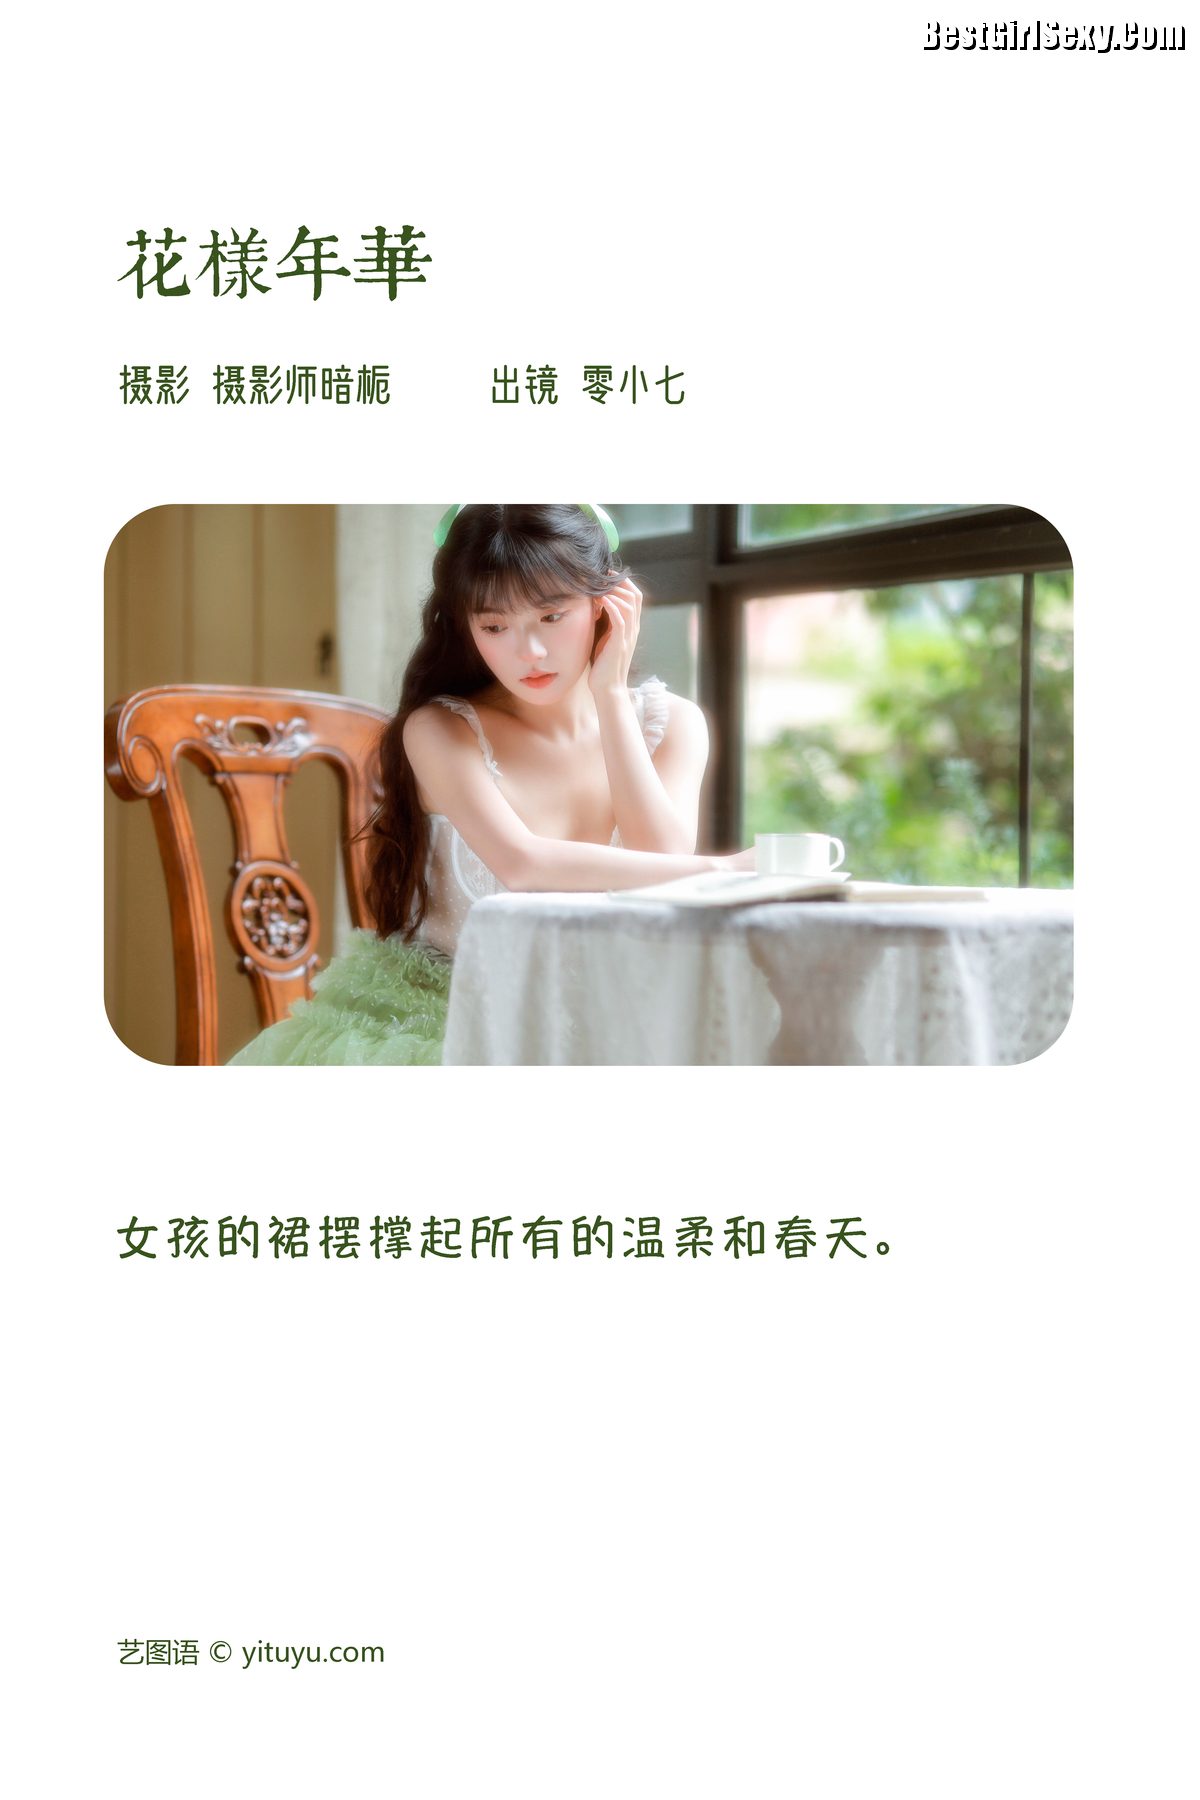 YiTuYu艺图语 Vol 3975 Ling Xiao Qi 0002 5273344665.jpg